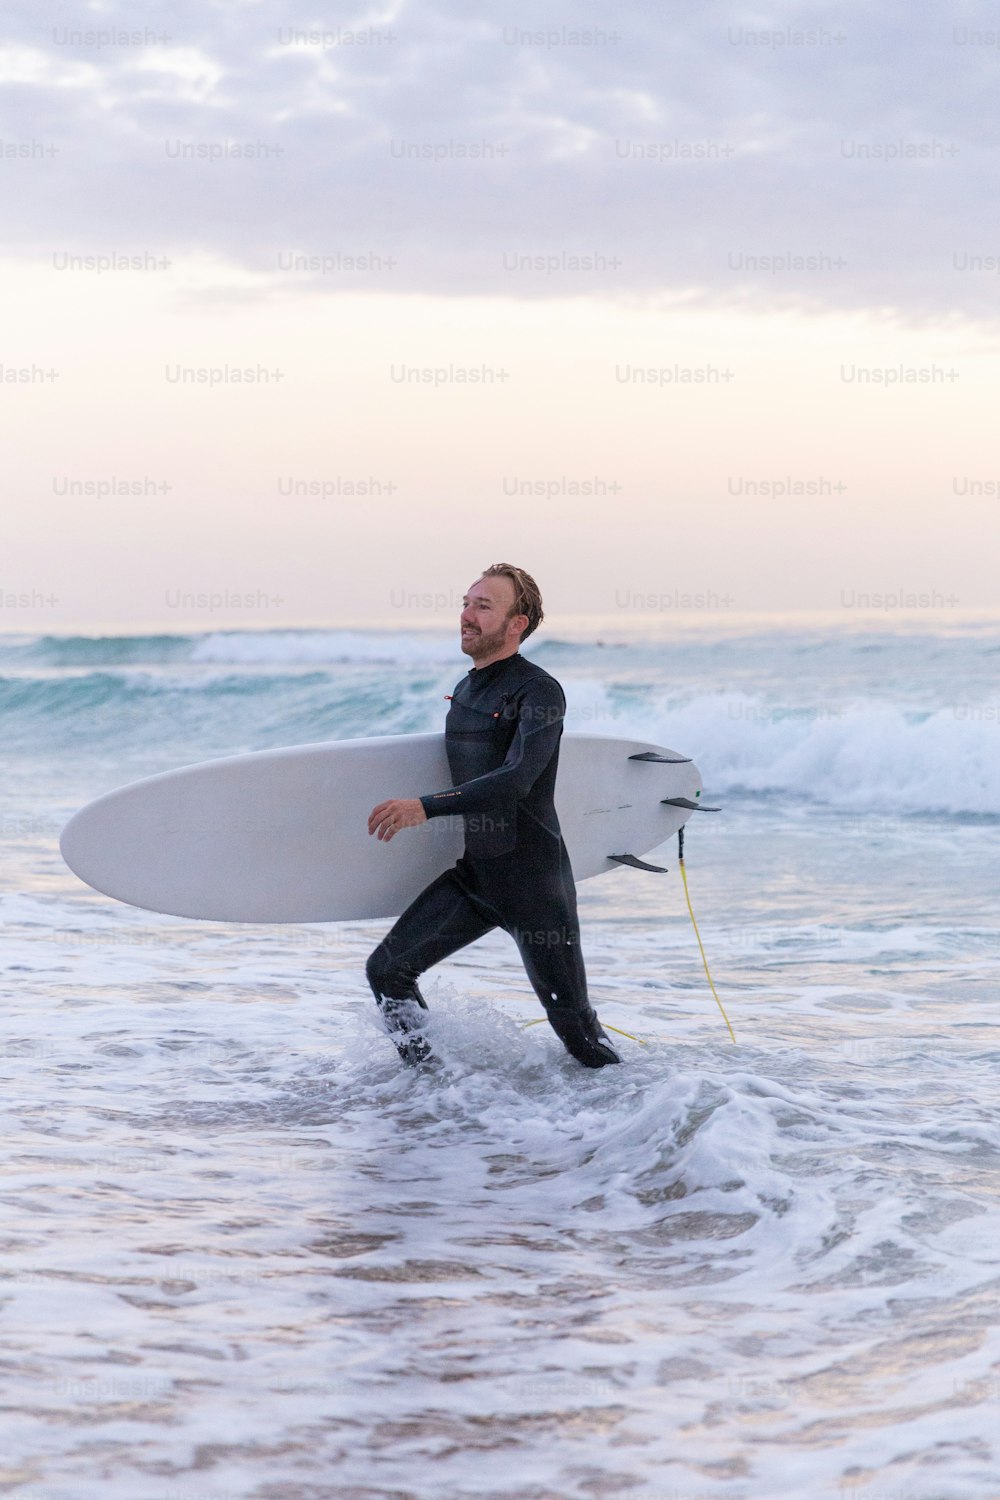 �잠수복을 입은 남자가 서핑보드를 바다로 들고 있다